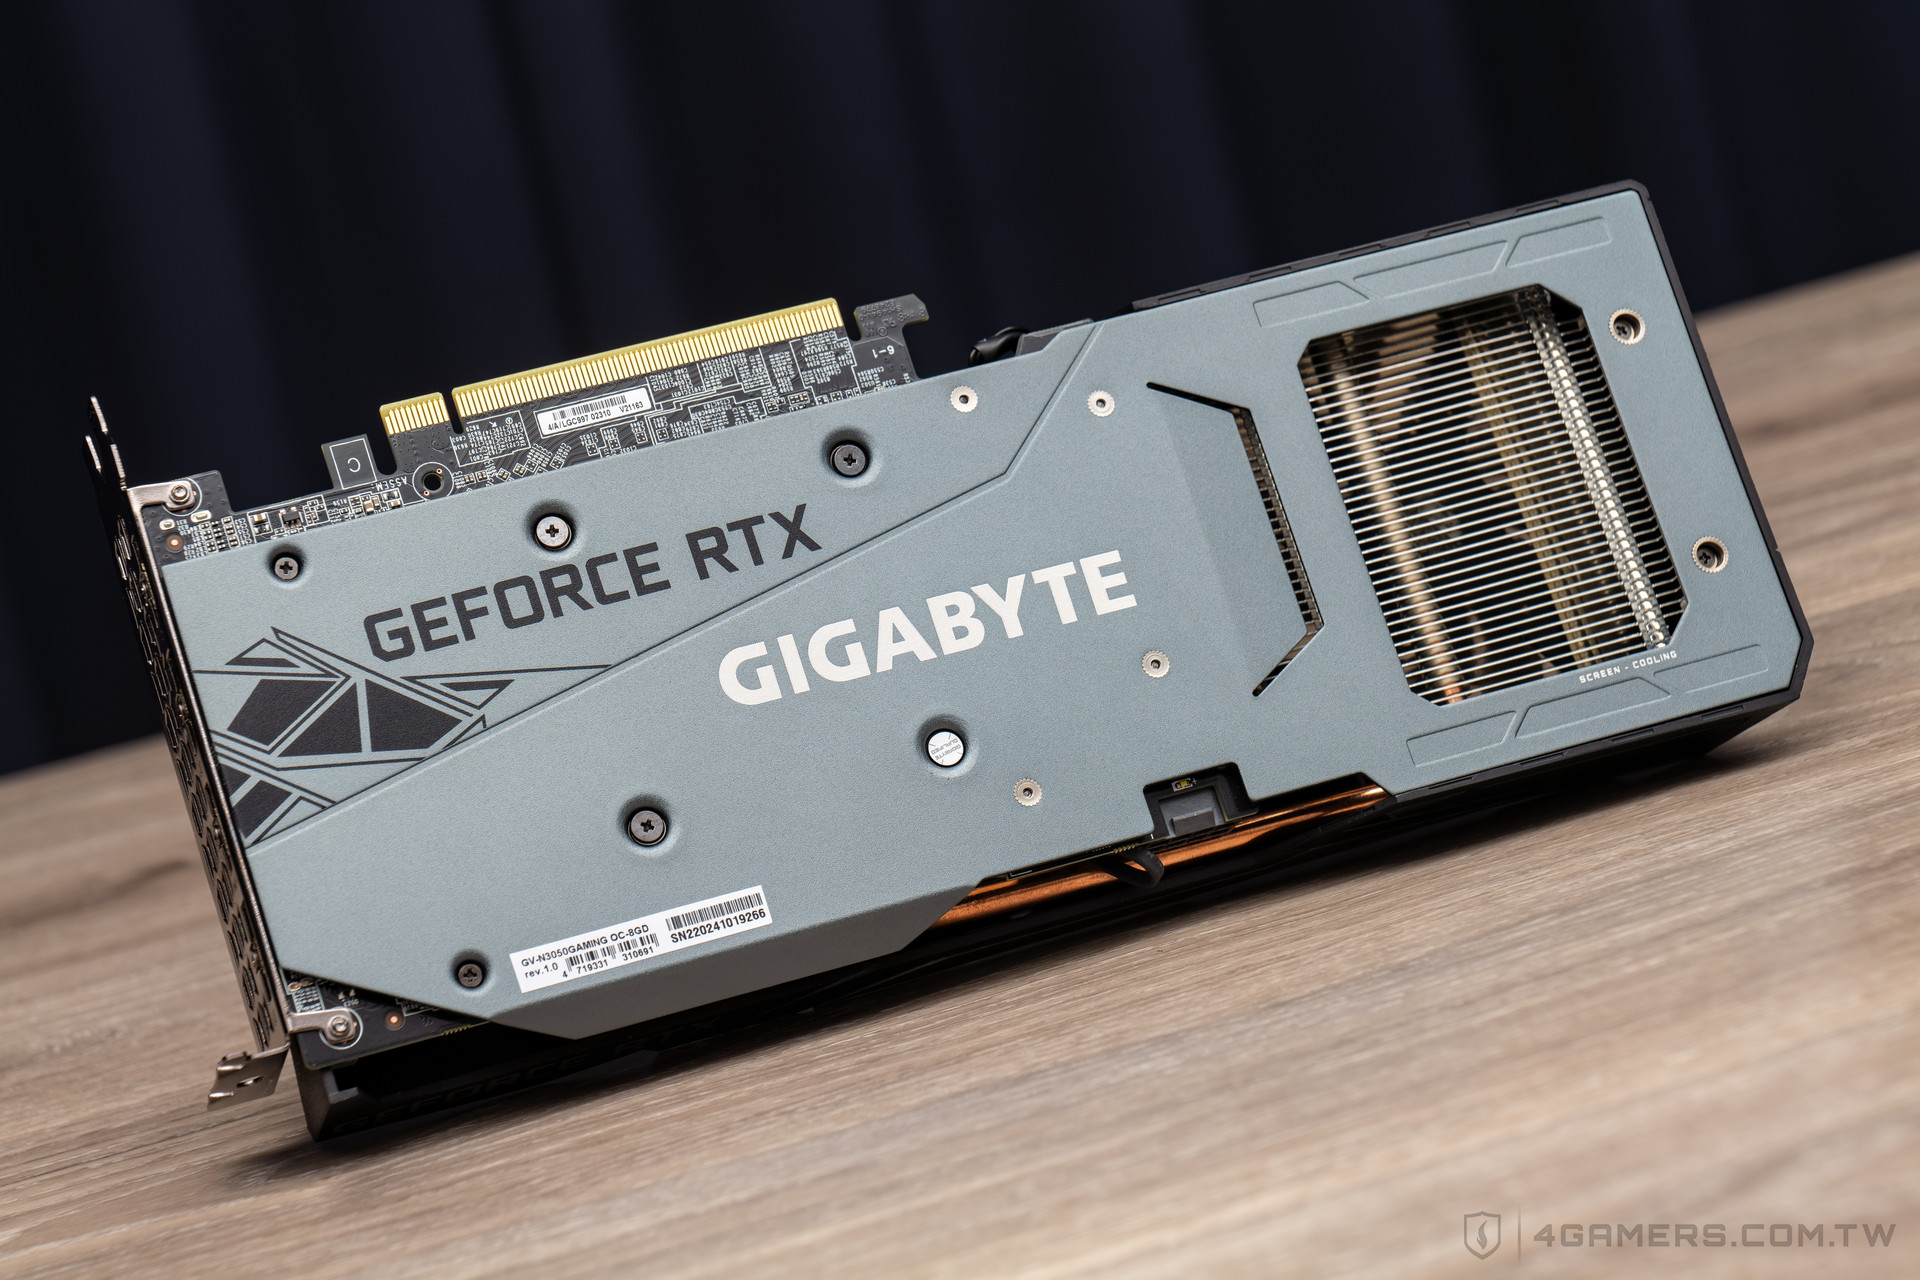 GIGABYTE GeForce RTX 3050 Gaming OC